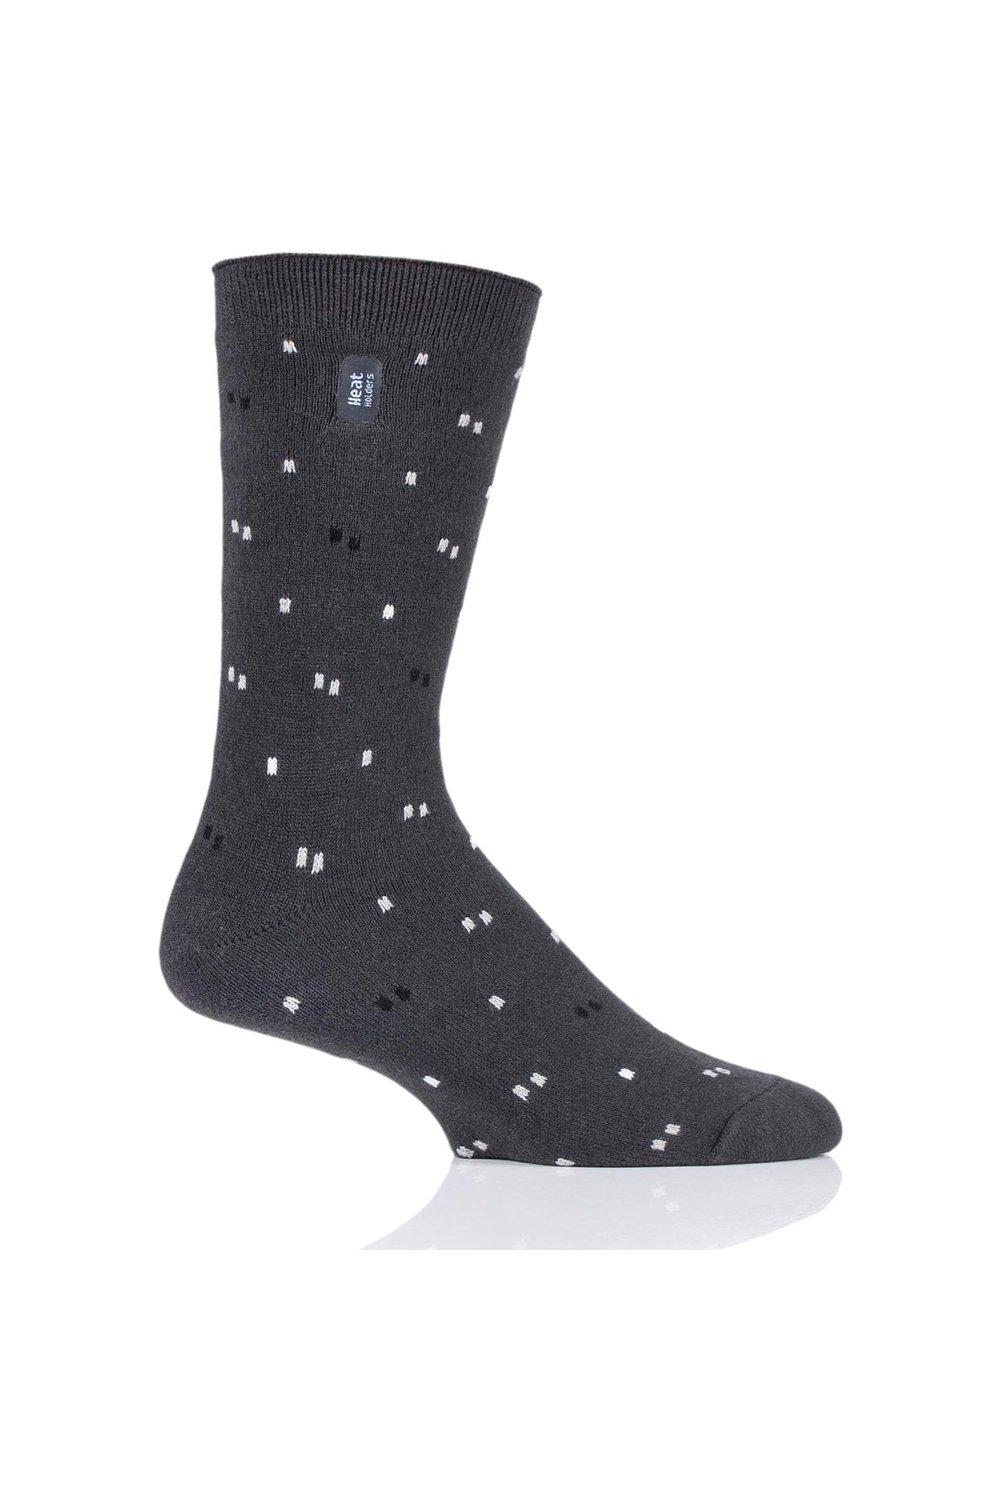 1 пара носков в полоску, аргайл и с рисунком 1.0 TOG Ultralite SOCKSHOP Heat Holders, серый фото